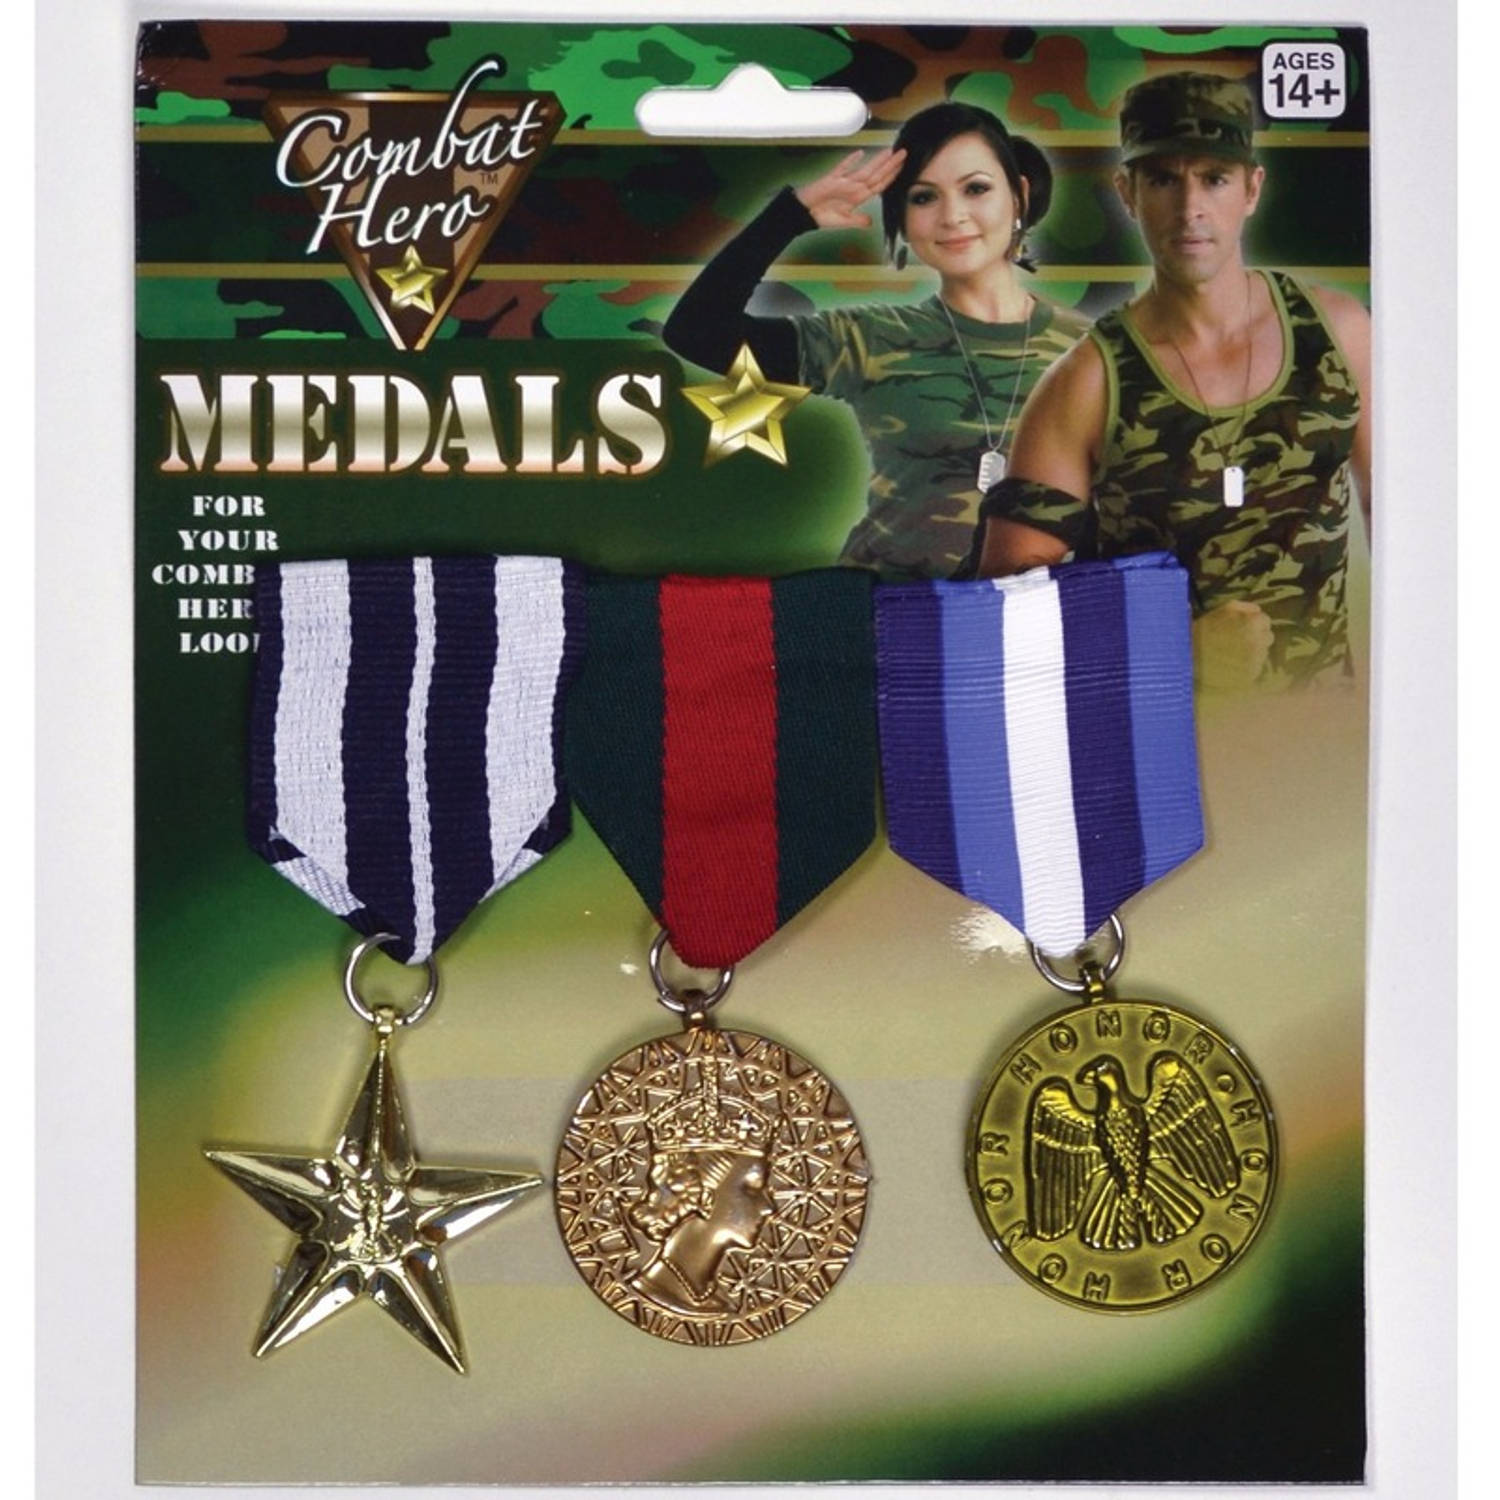 Militaire medailles 3 stuks